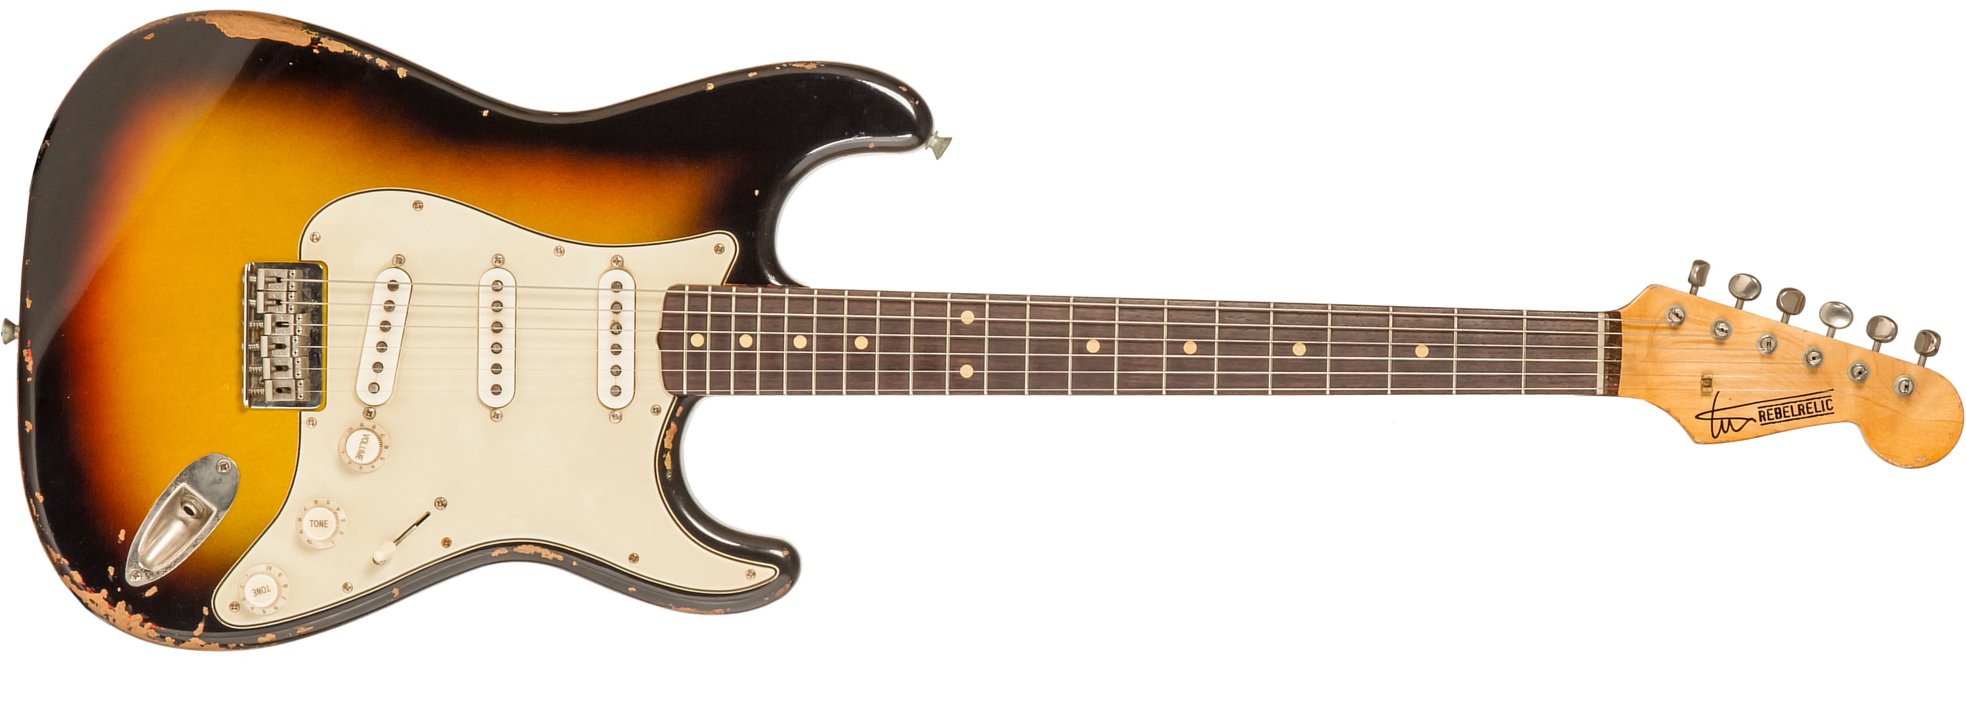 Rebelrelic S-series 1961 Hardtail 3s Ht Rw #231008 - 3-tone Sunburst - Guitare Électrique Forme Str - Main picture